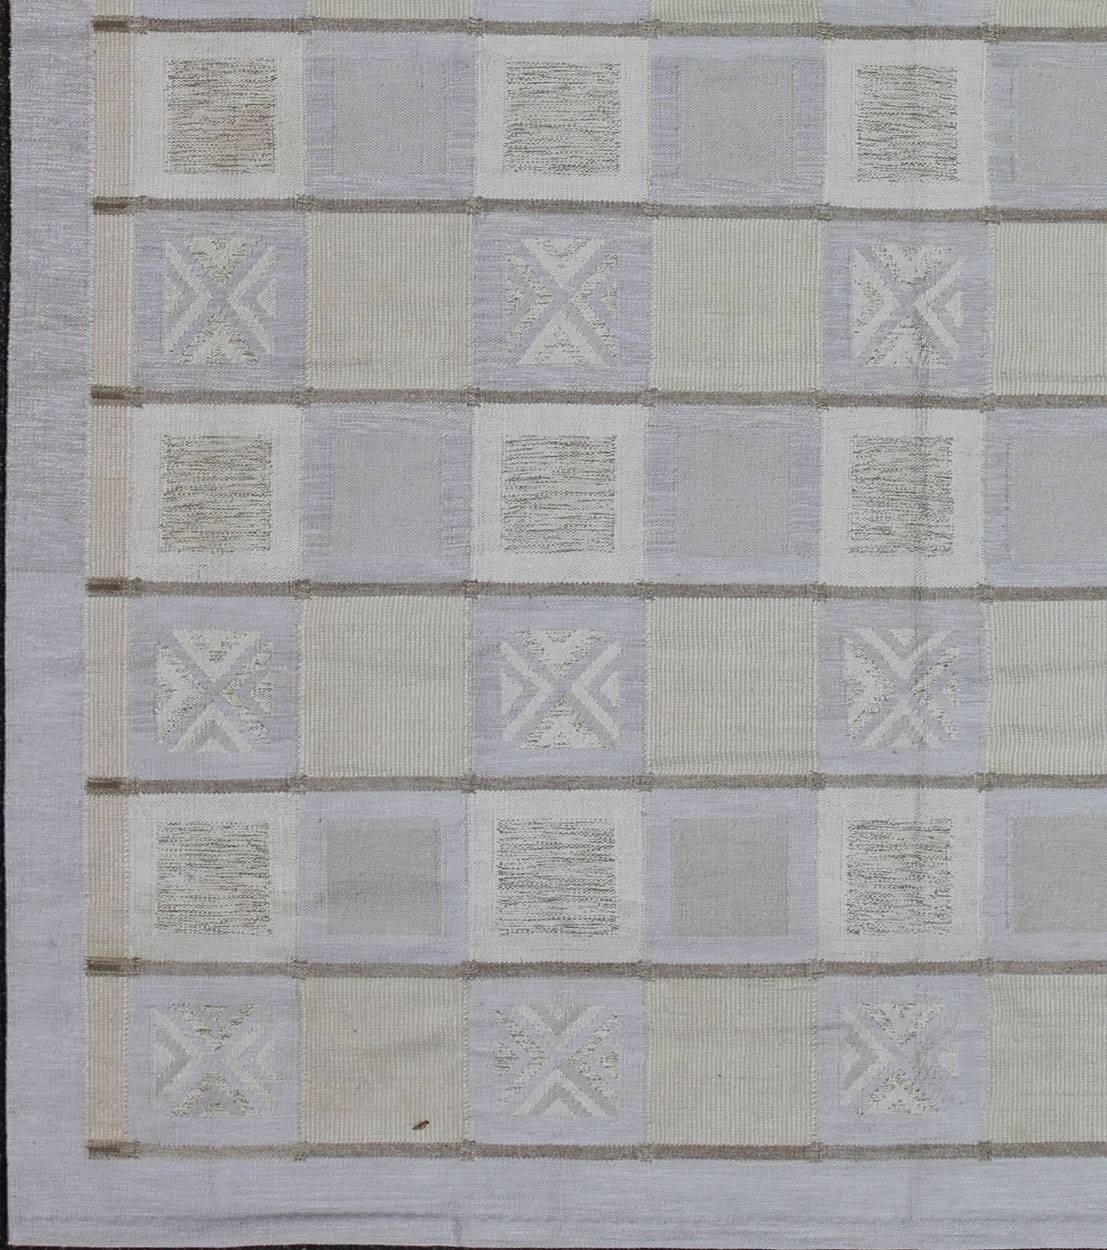 Dieser Teppich mit skandinavischem Flachgewebe-Muster ist von den Arbeiten schwedischer Textildesigner aus der Zeit Anfang bis Mitte des 20. Jahrhunderts inspiriert. Mit einer einzigartigen Mischung aus historischem und modernem Design ist diese